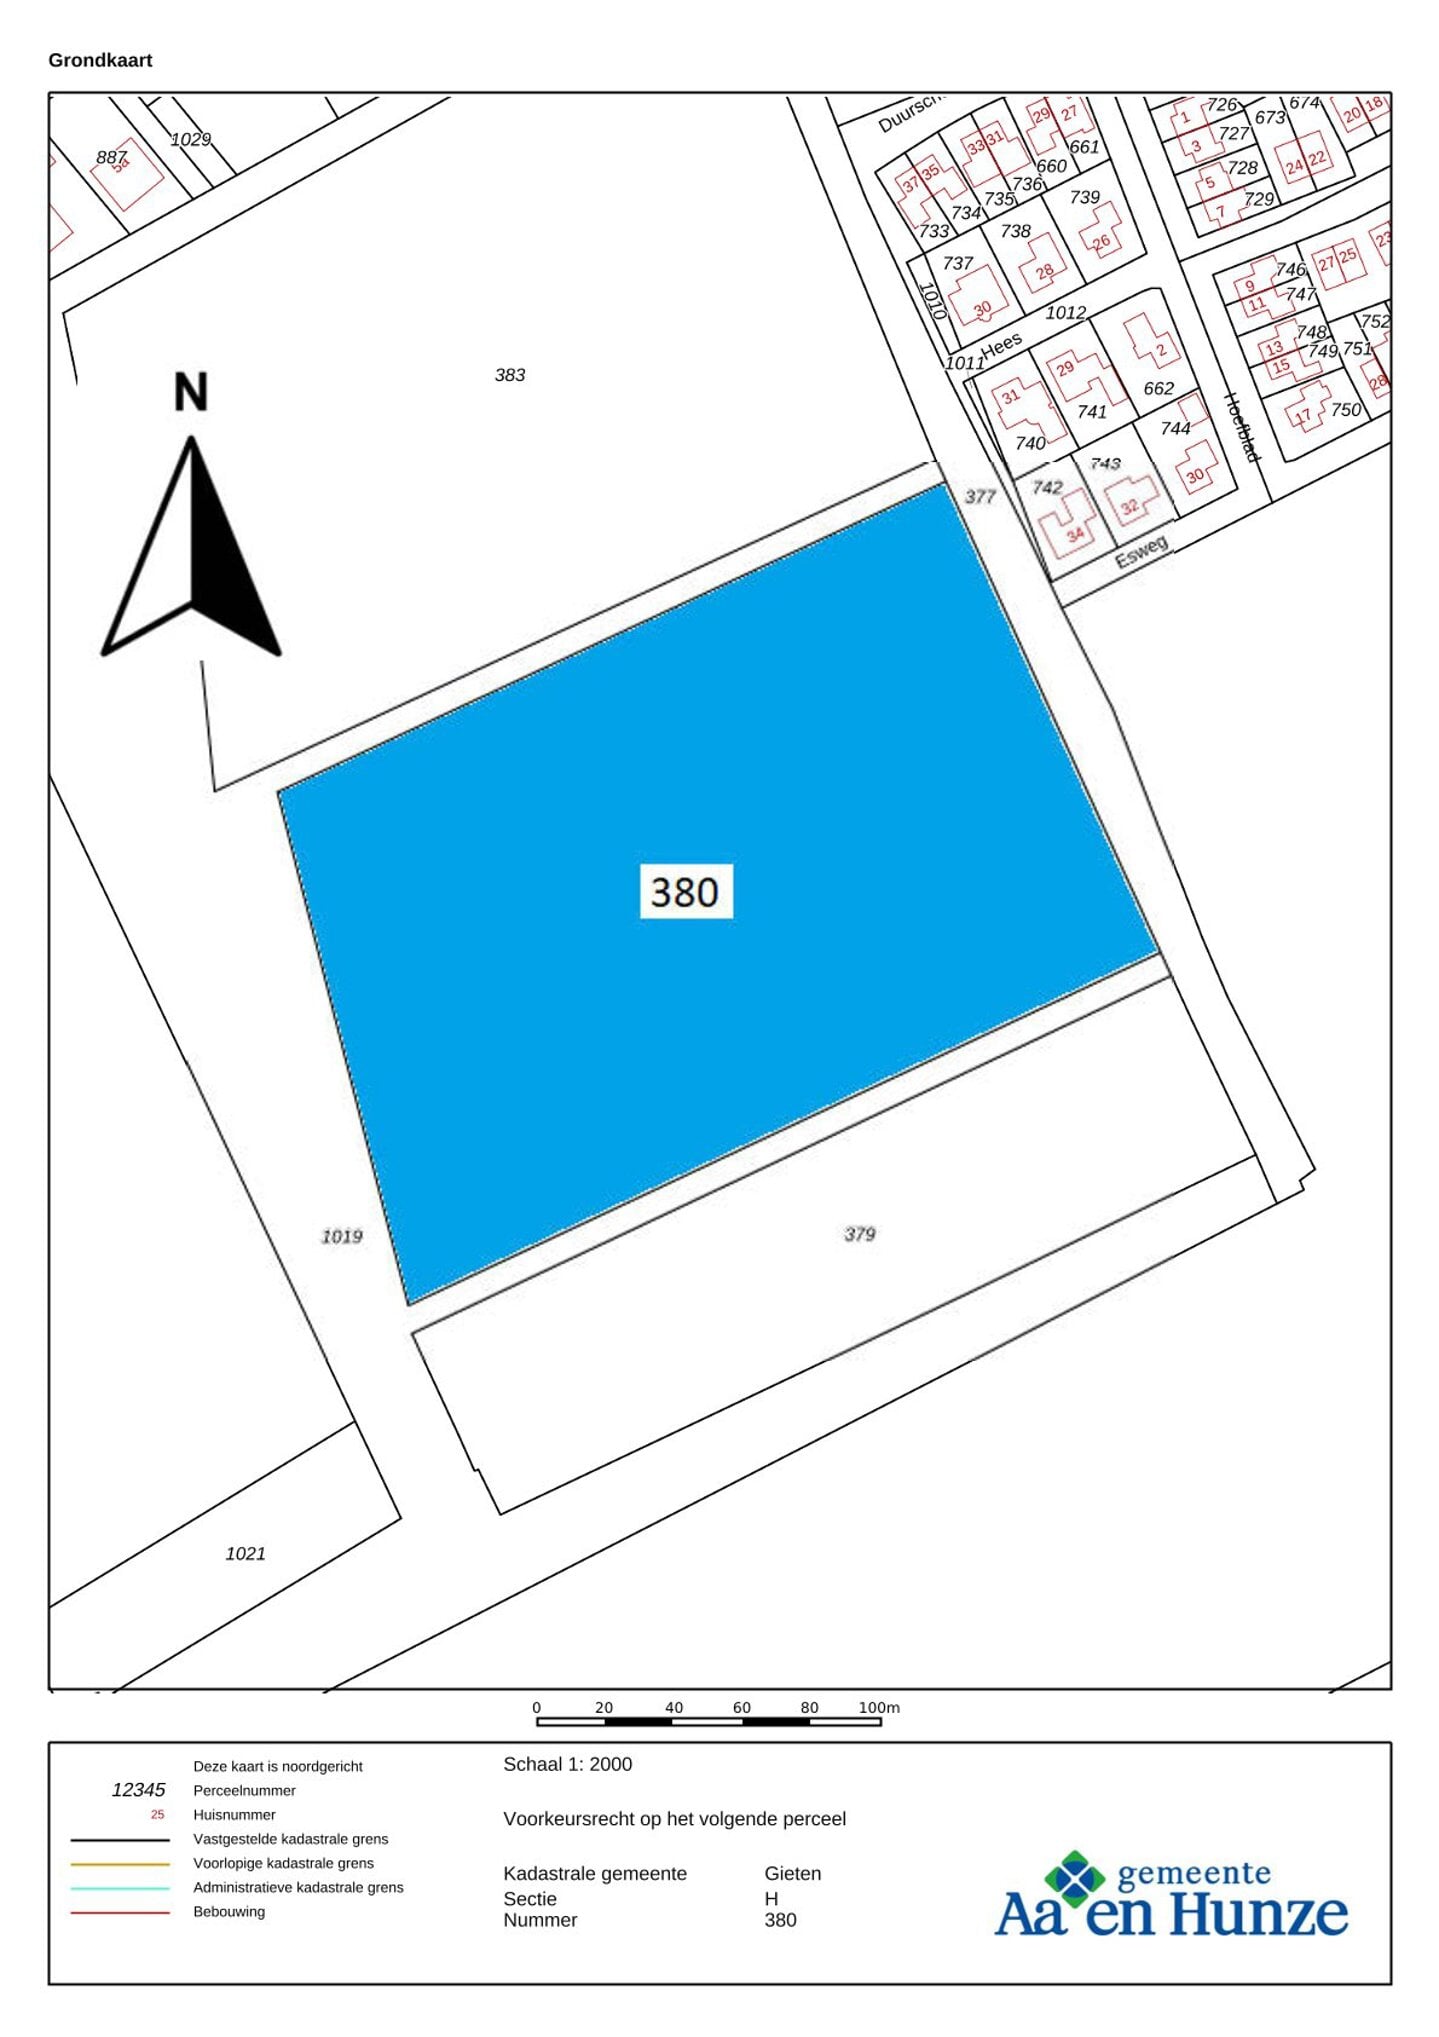 De drie percelen ten westen van de wijk Duurschen in Gieten waar het voorkeursrecht op van toepassing wordt. (383, 380 en 379.